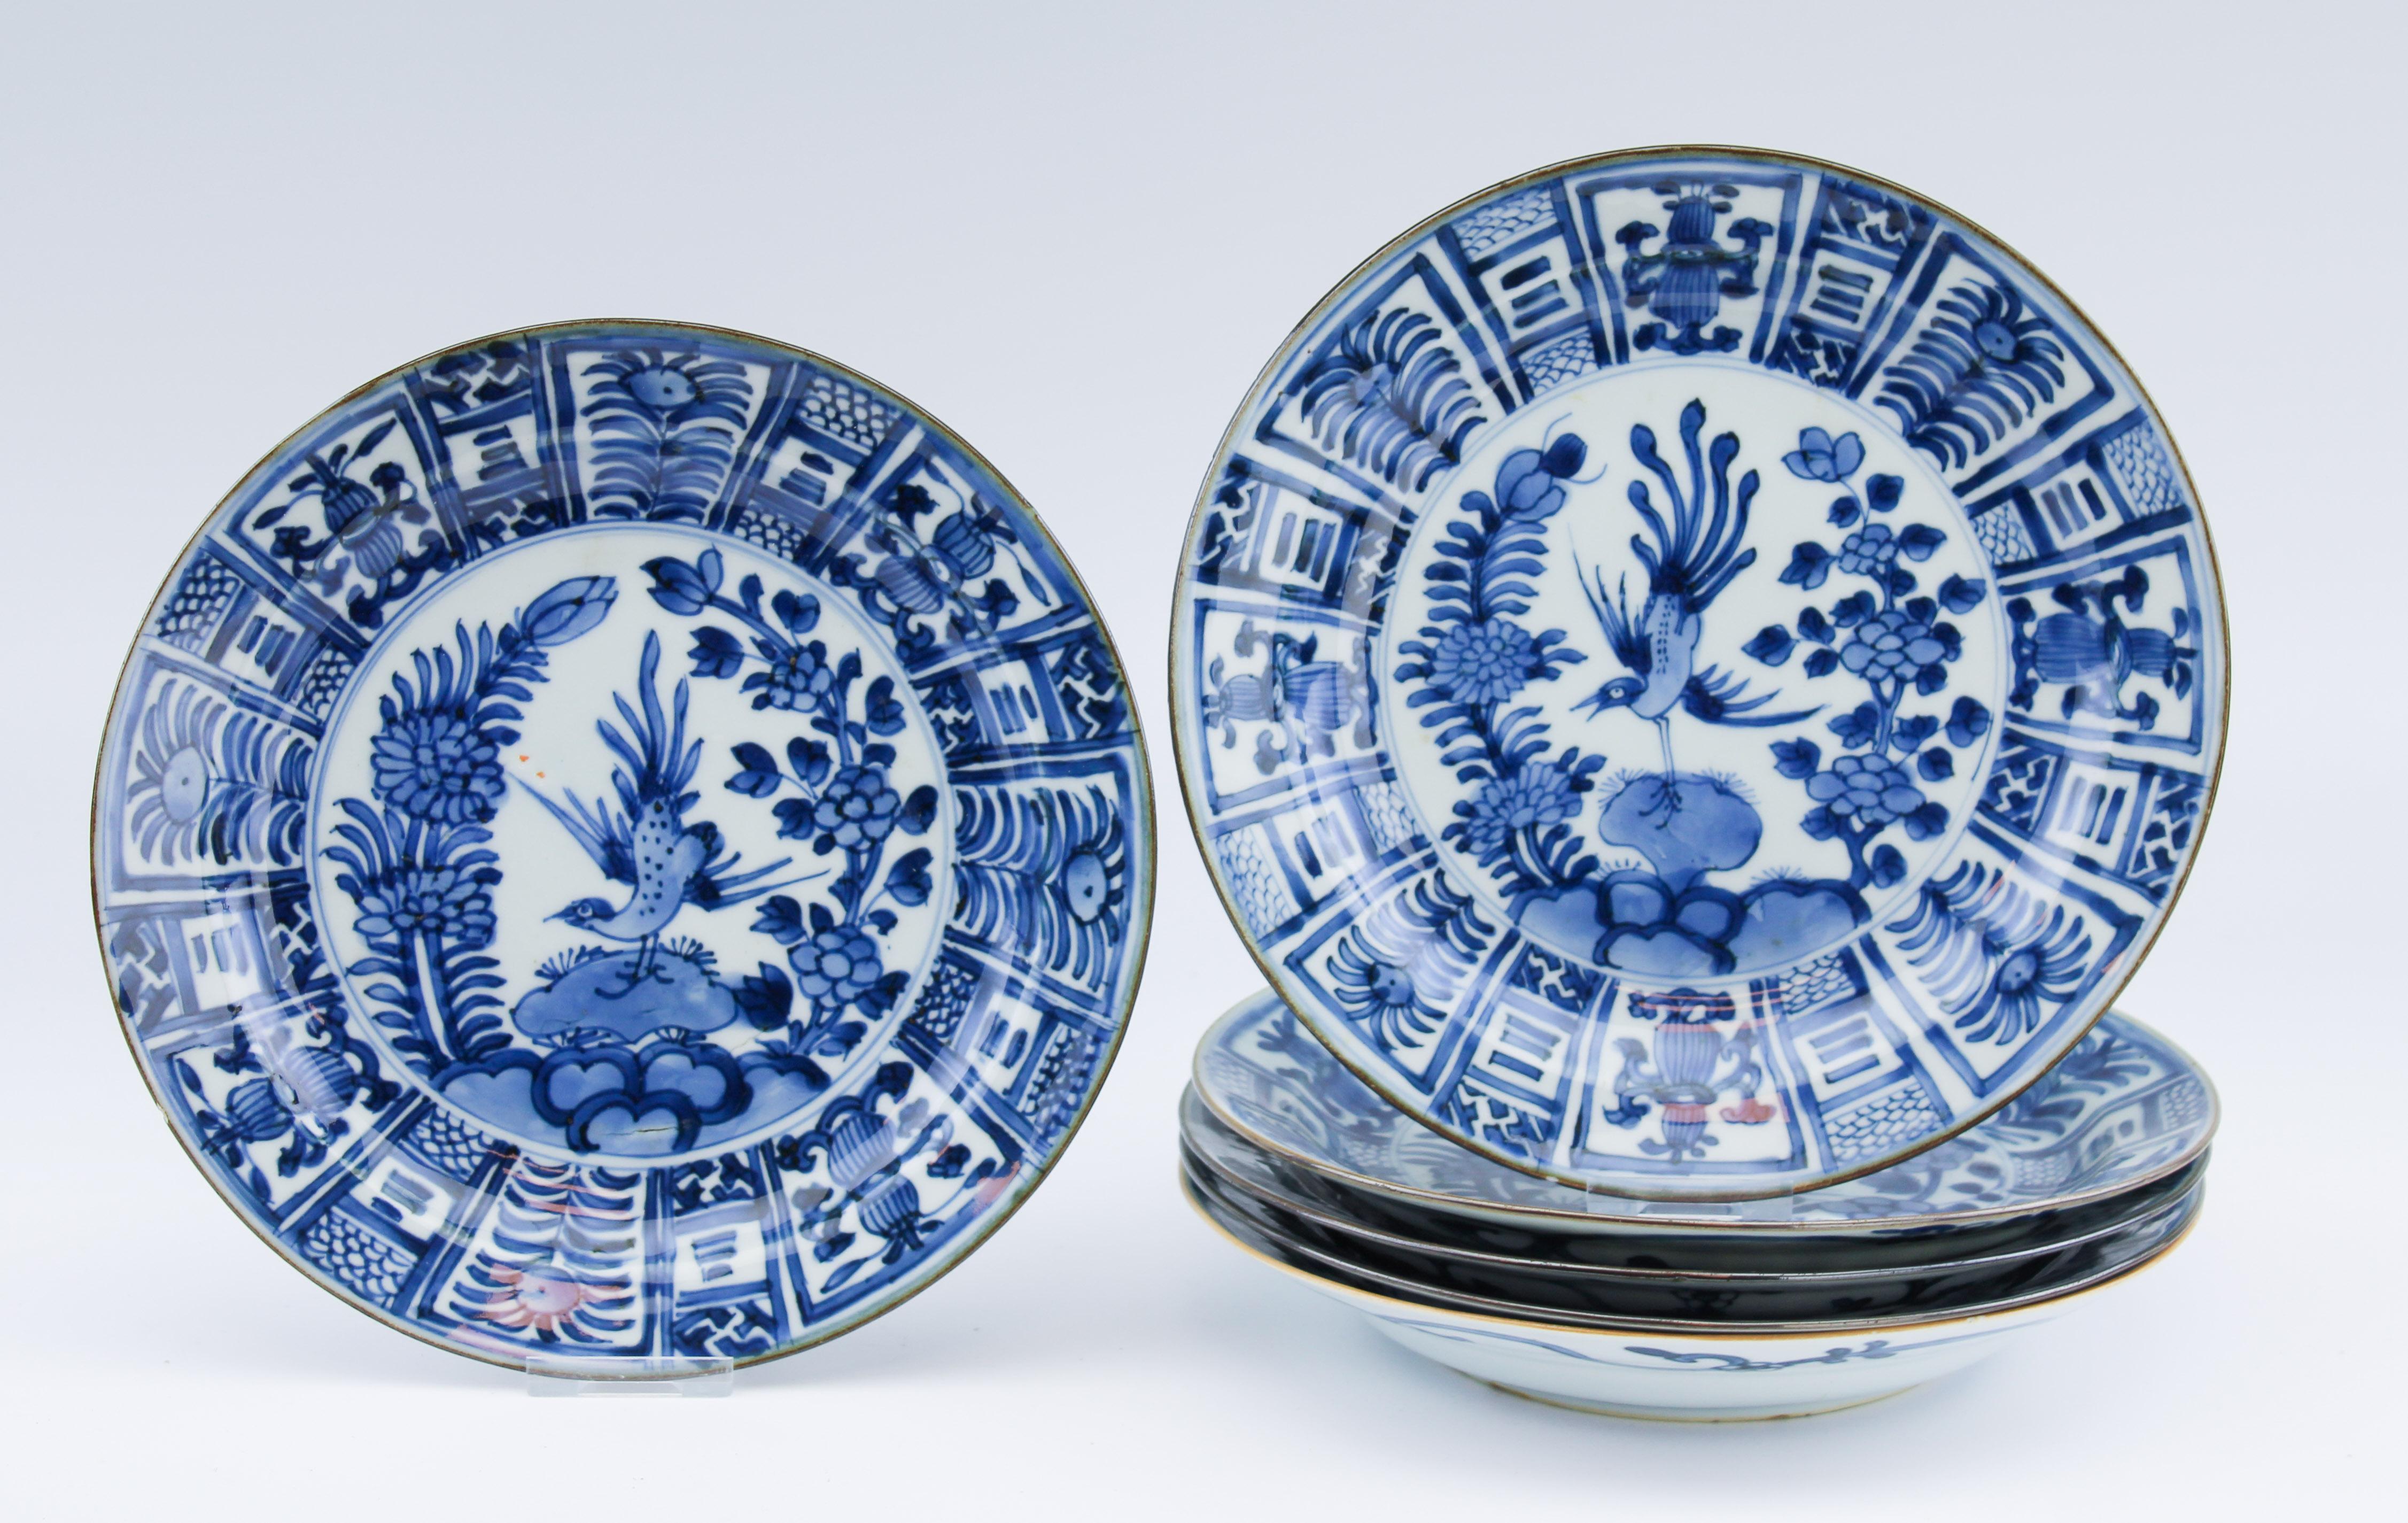 Très belle série de plats en bleu et blanc, période Kangxi, dans le style japonais de Whiting. Vers 1700. Décoré de fleurs et d'oiseaux

Condit
Très bon état. Fruits et éclats mineurs sur le bord. Deux avec une ligne de démarcation. 1 au bord, 1 à